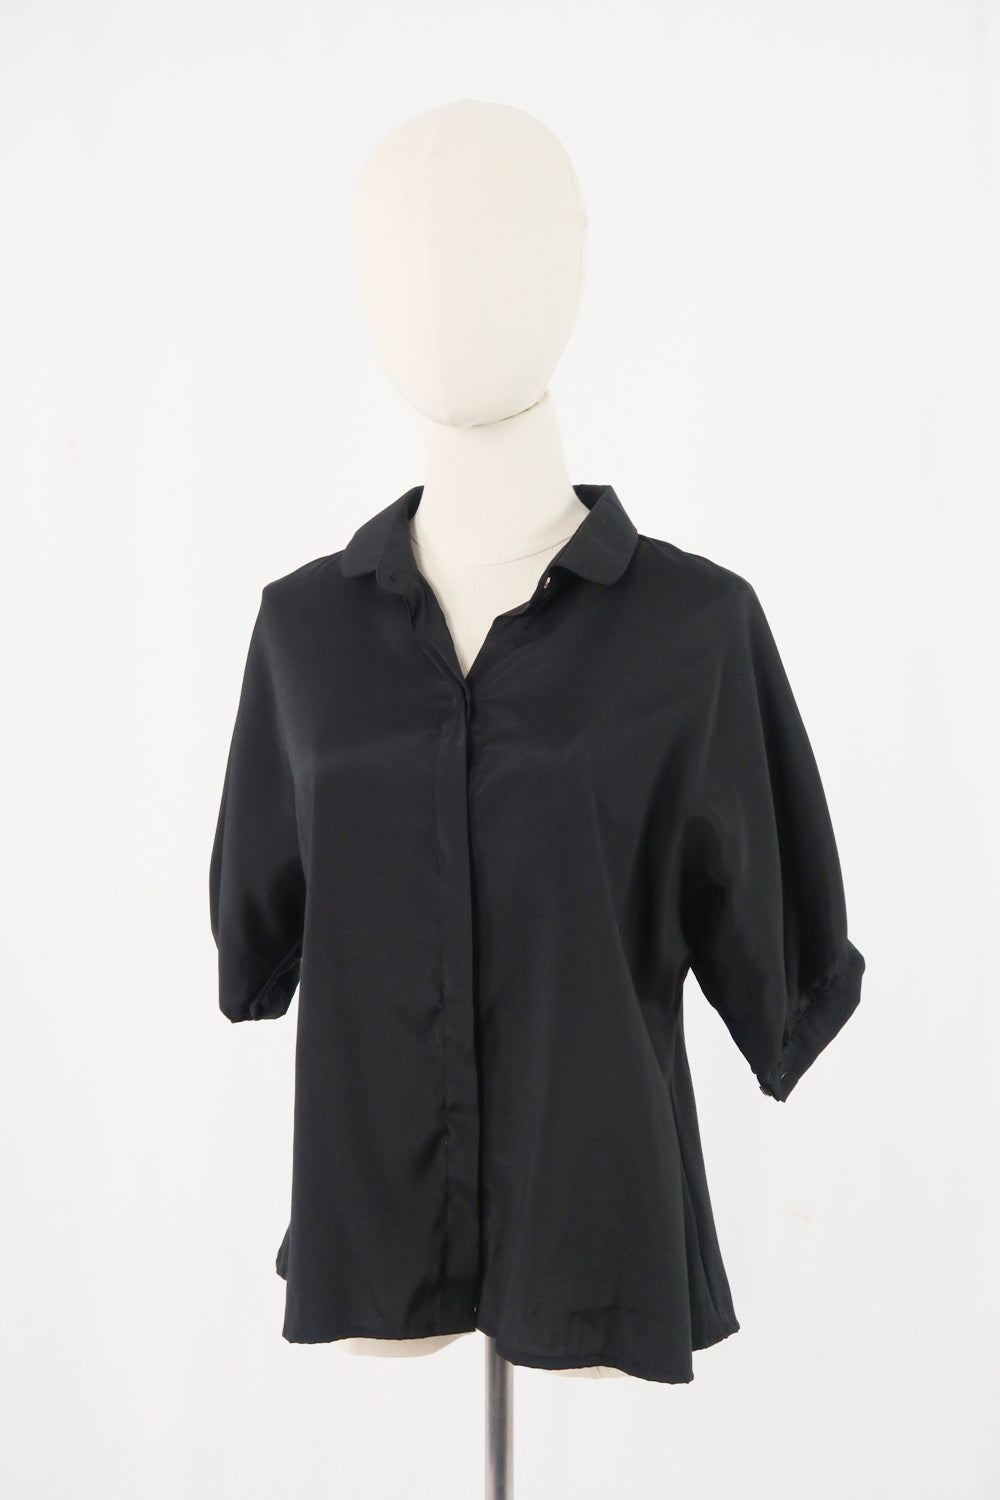 เสื้อเบลาส์ชีฟอง  - No.3-1171